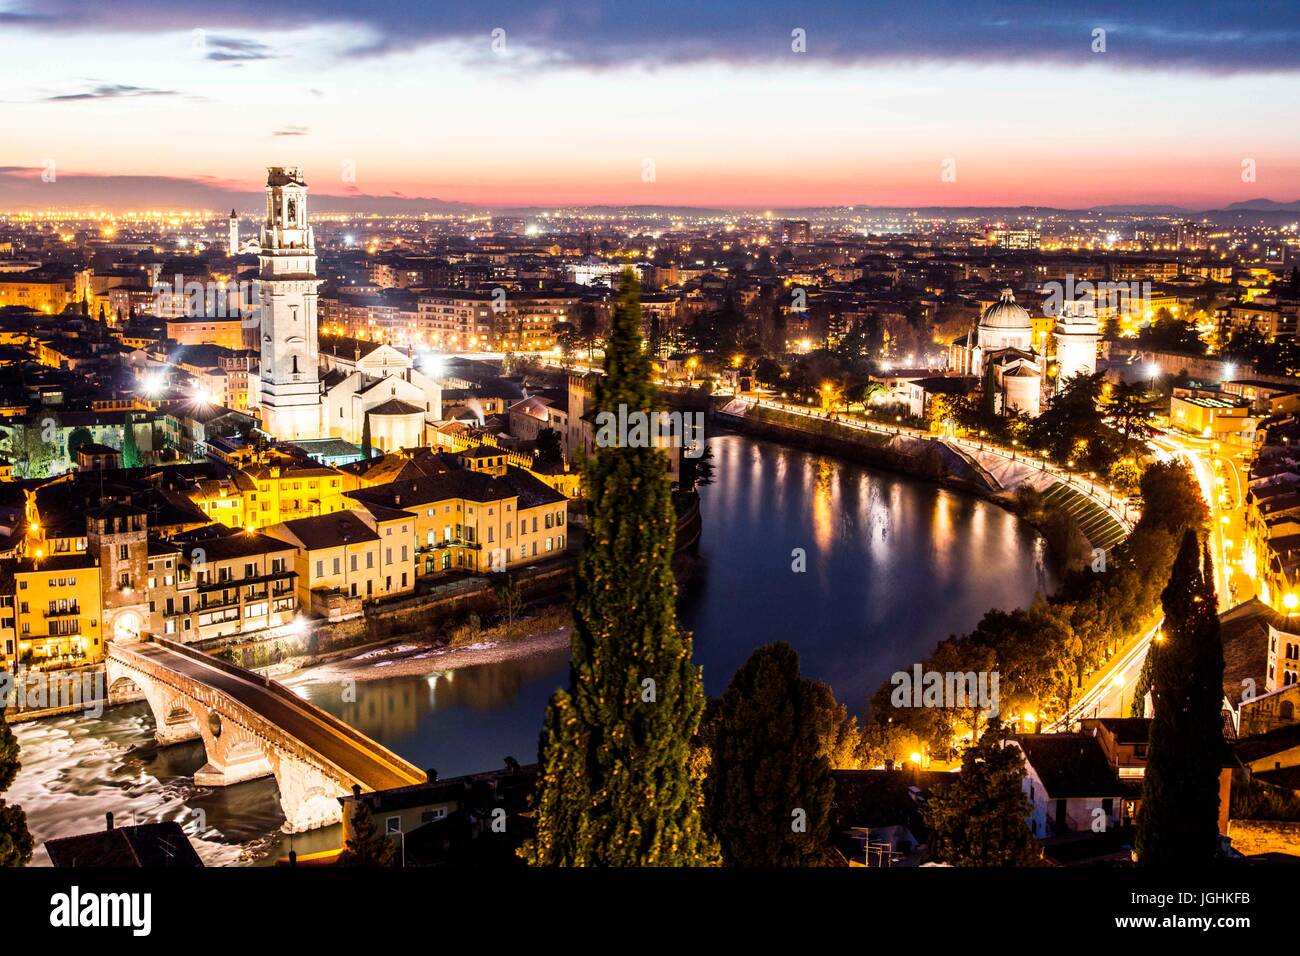 Duomo di Verona sulla sinistra, San Giorgio in Braida chiesa sulla destra, Ponte Pietra e vista della città di sera da Castel San Pietro. Verona, Foto Stock